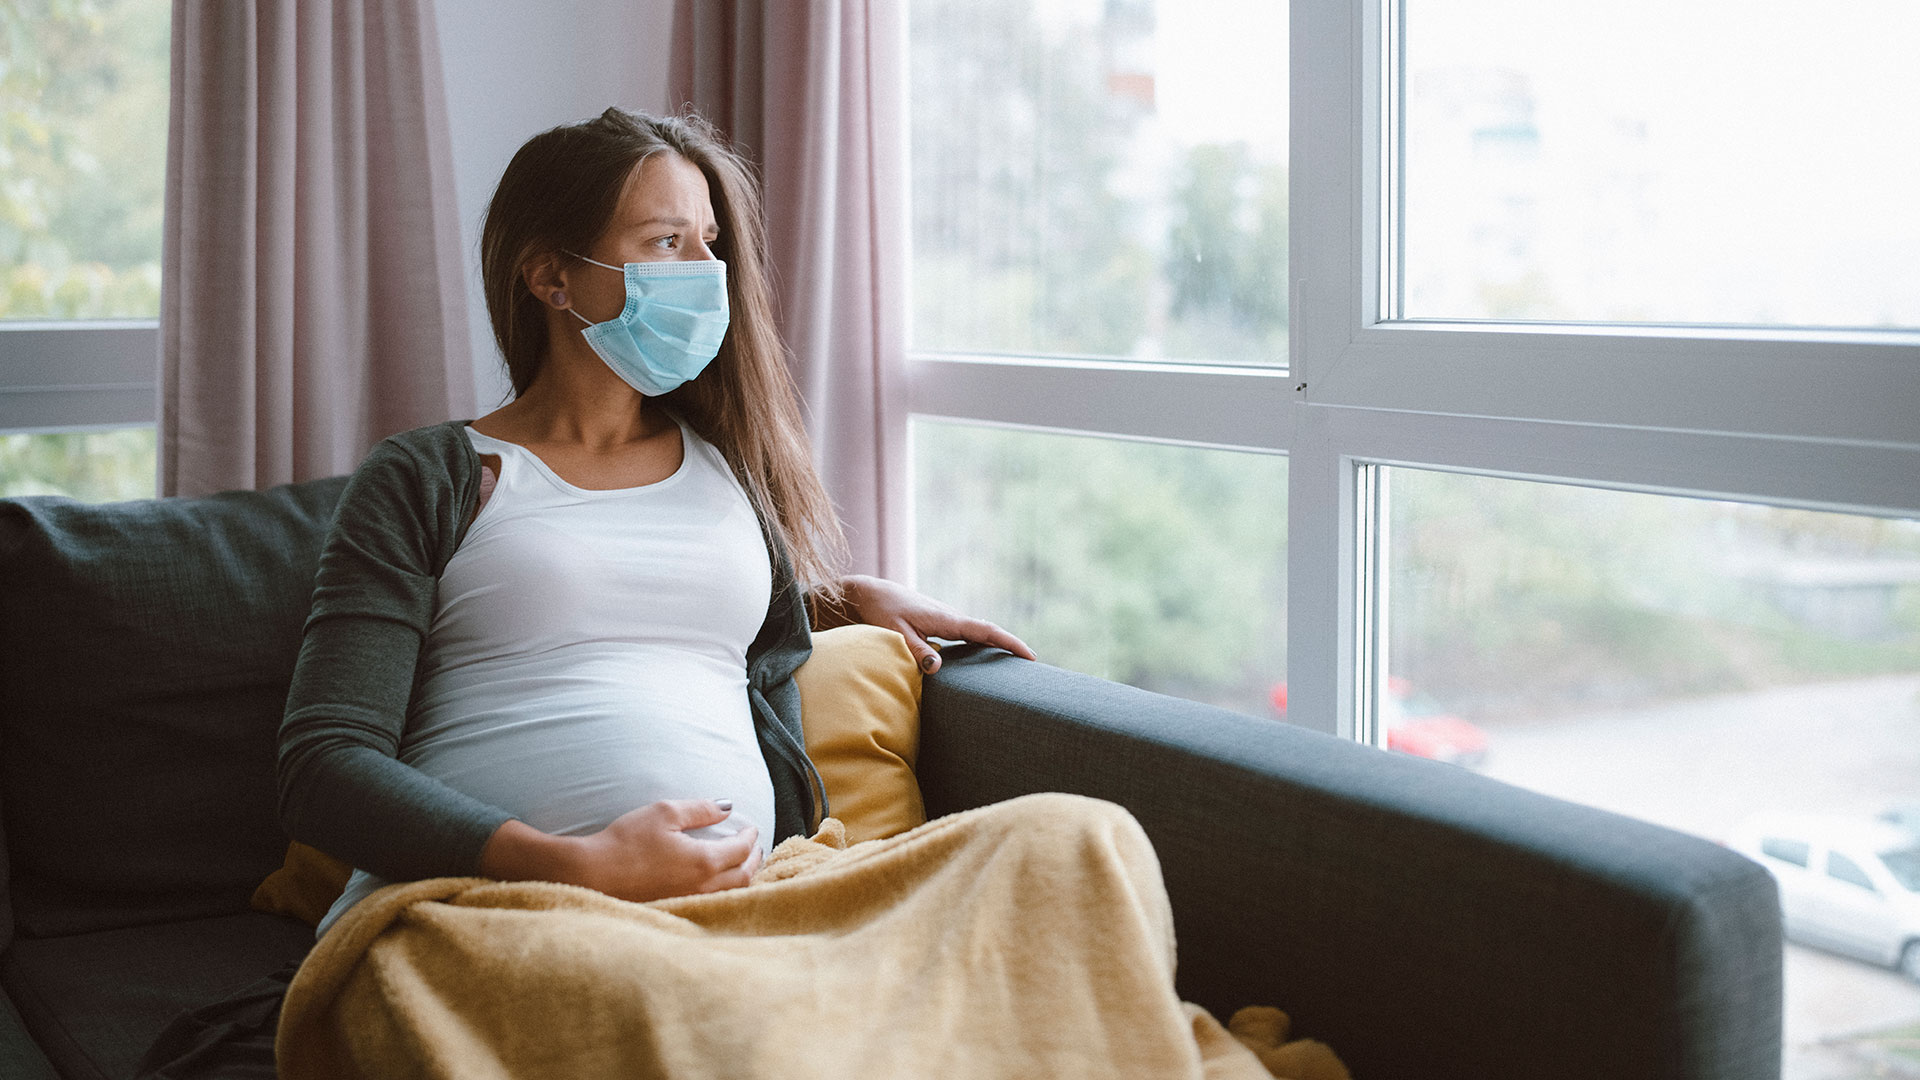 En un experimento natural basado en la población, el virus pandémico H1N1 afectó la mortalidad materna casi exclusivamente por las complicaciones relacionadas con el sistema respiratorio y la sepsis (Getty Images)